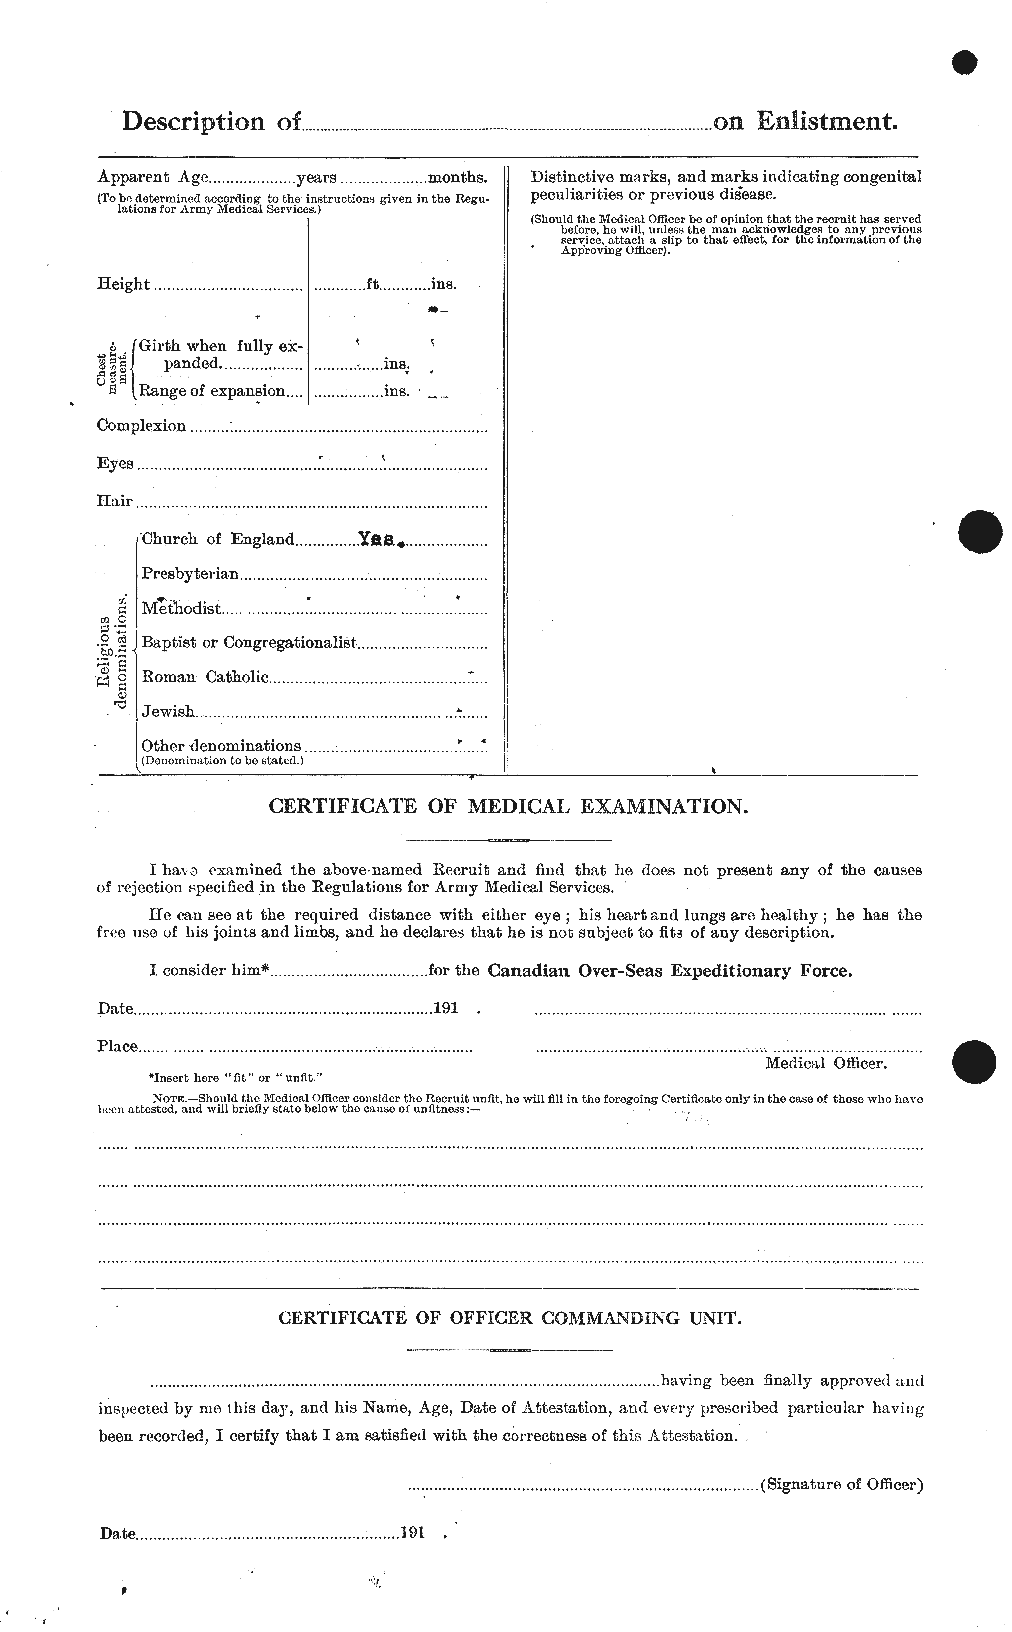 Dossiers du Personnel de la Première Guerre mondiale - CEC 237380b